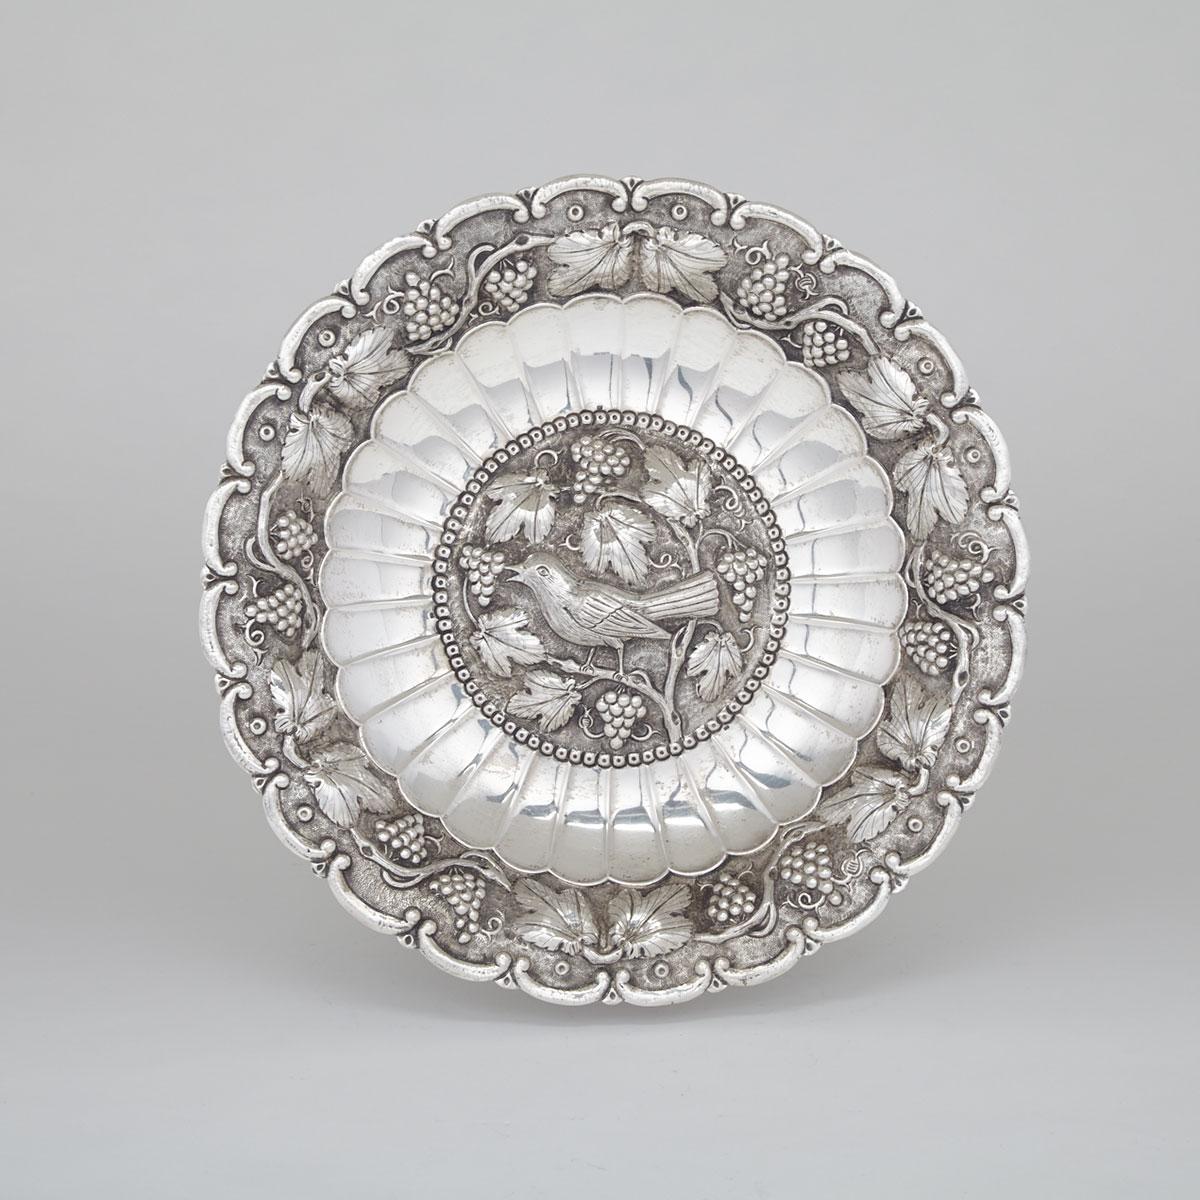 South European Silver Circular Dish, 20th century